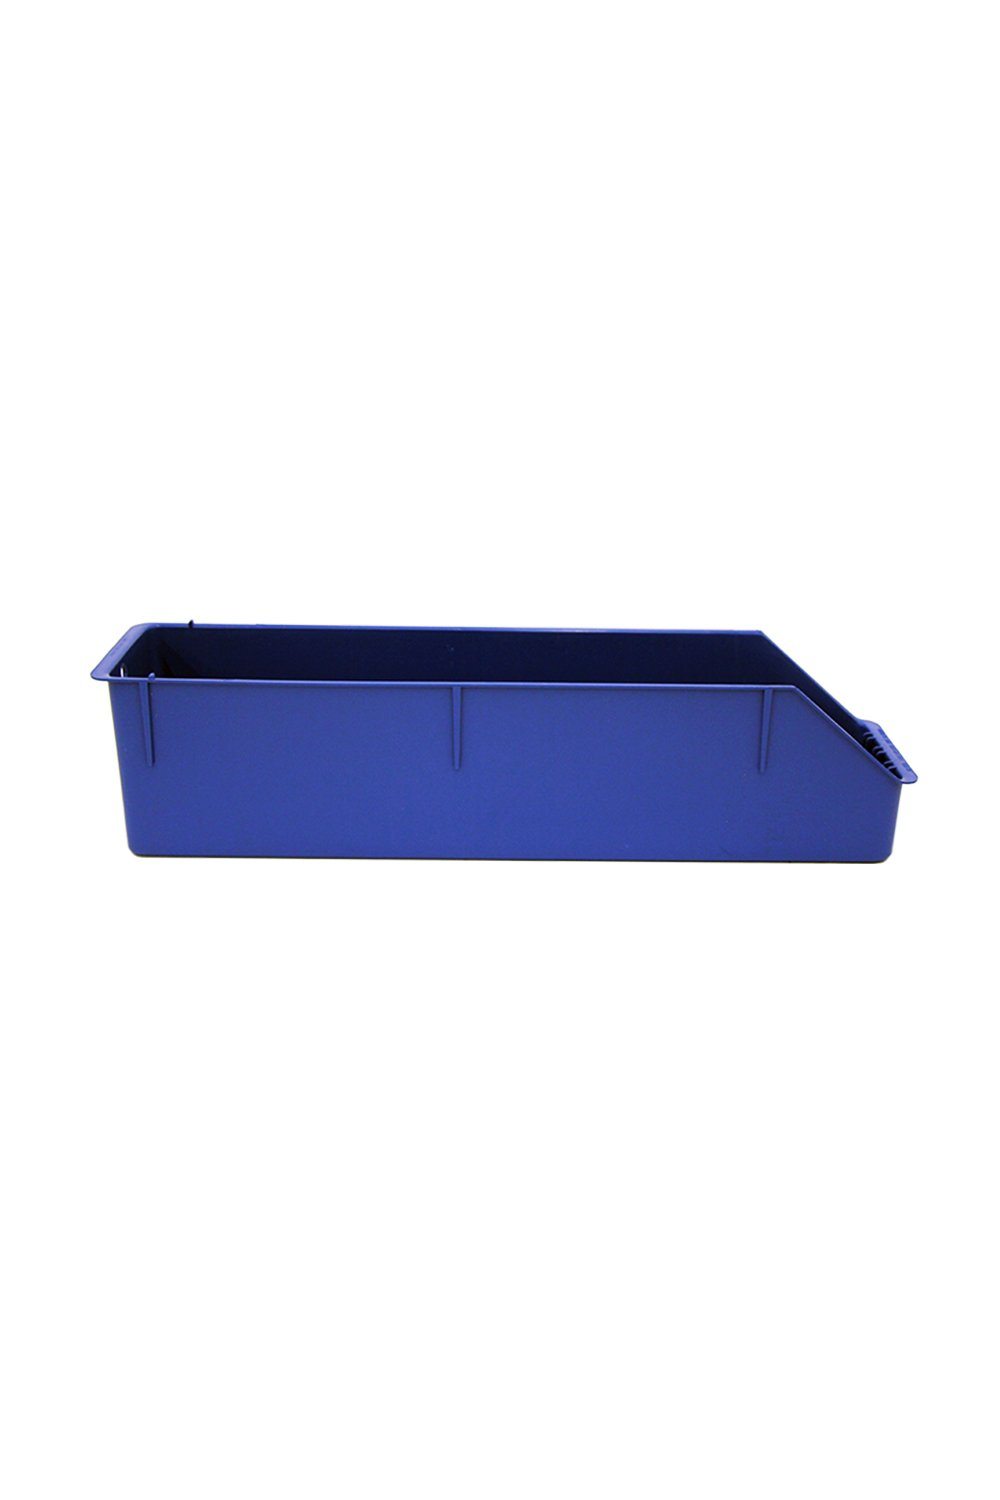 Blue Shelf Bin Bins & Containers Acart 